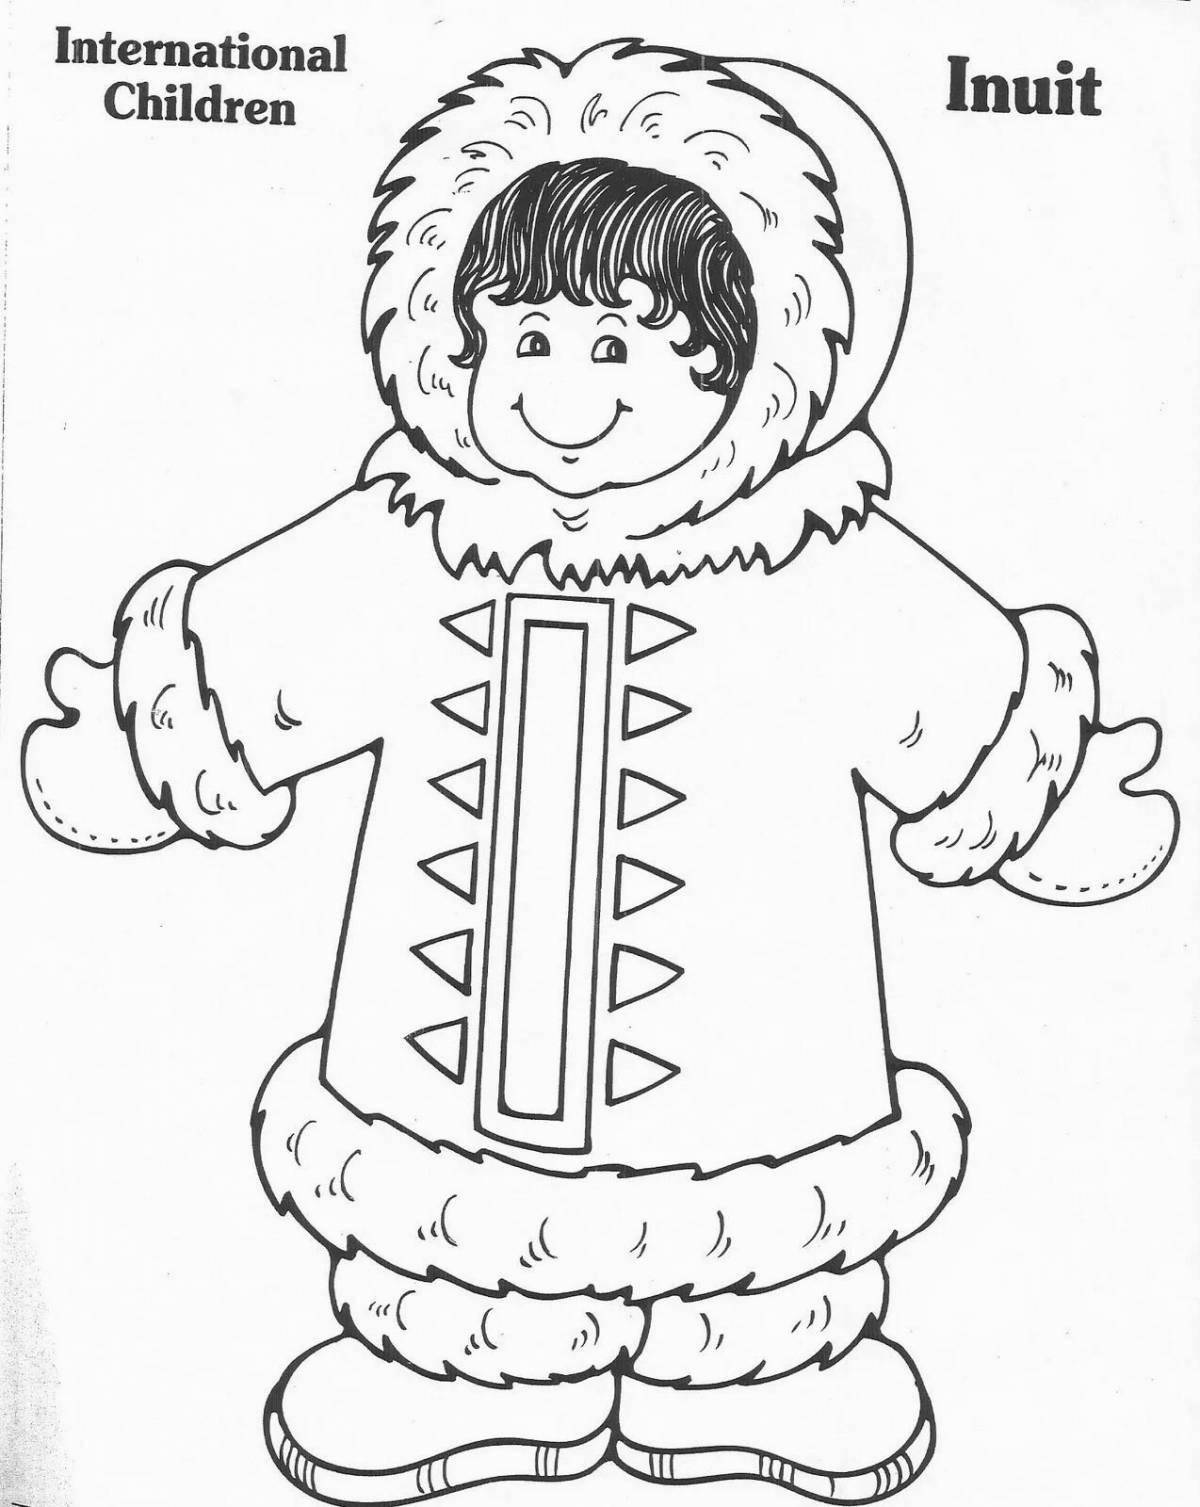 Joyful coloring girl in a fur coat